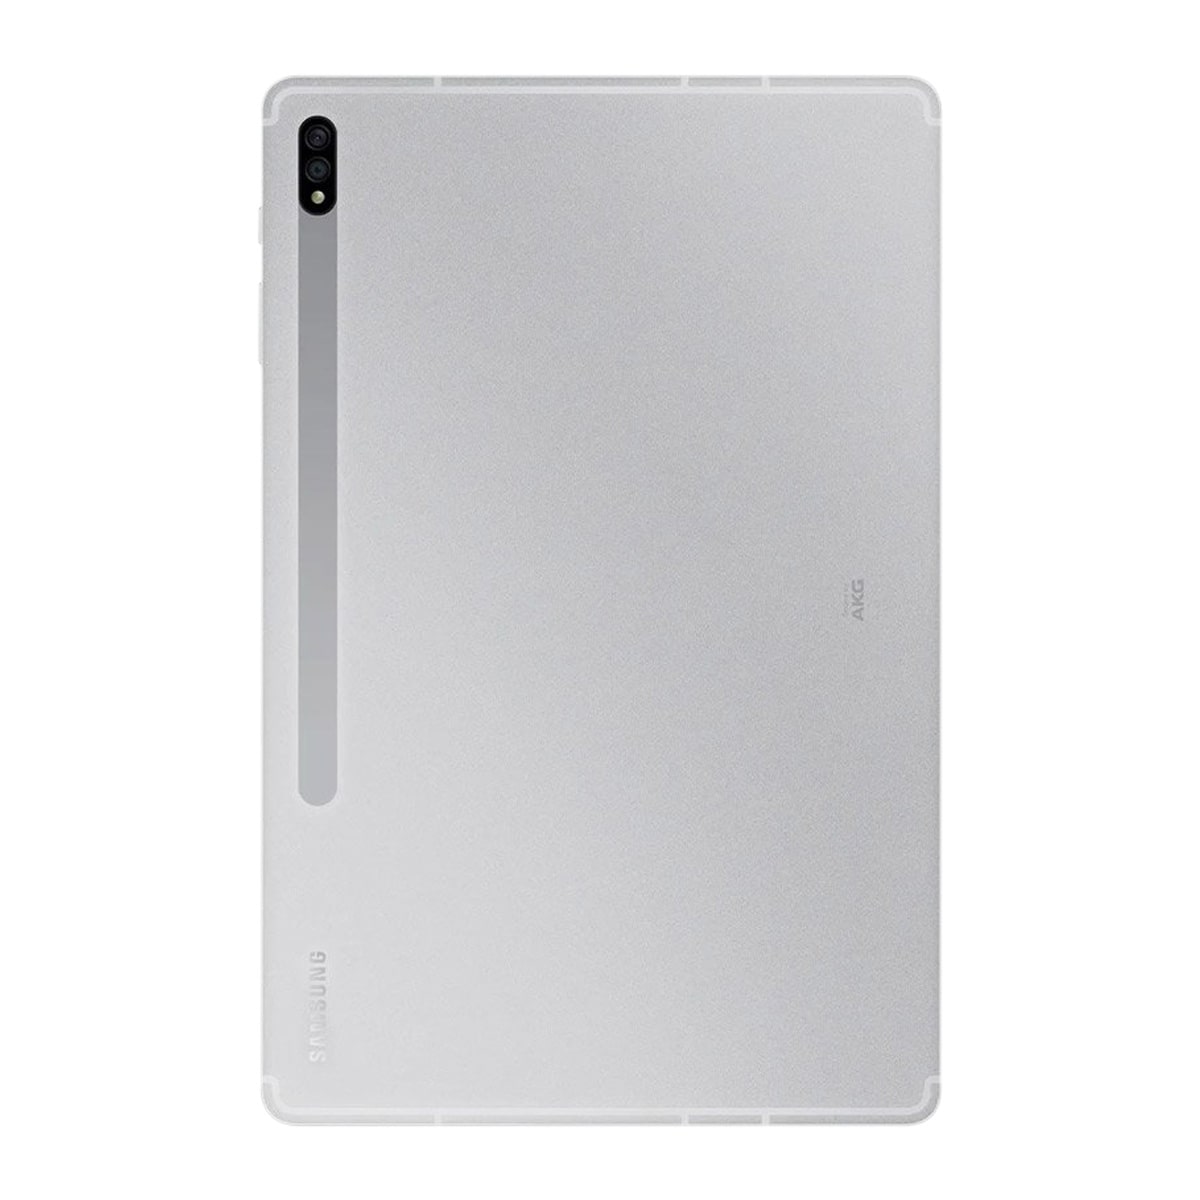 تبلت سامسونگ مدل Galaxy Tab S7 Plus T975 به همراه S Pen ظرفیت 128 گیگابایت